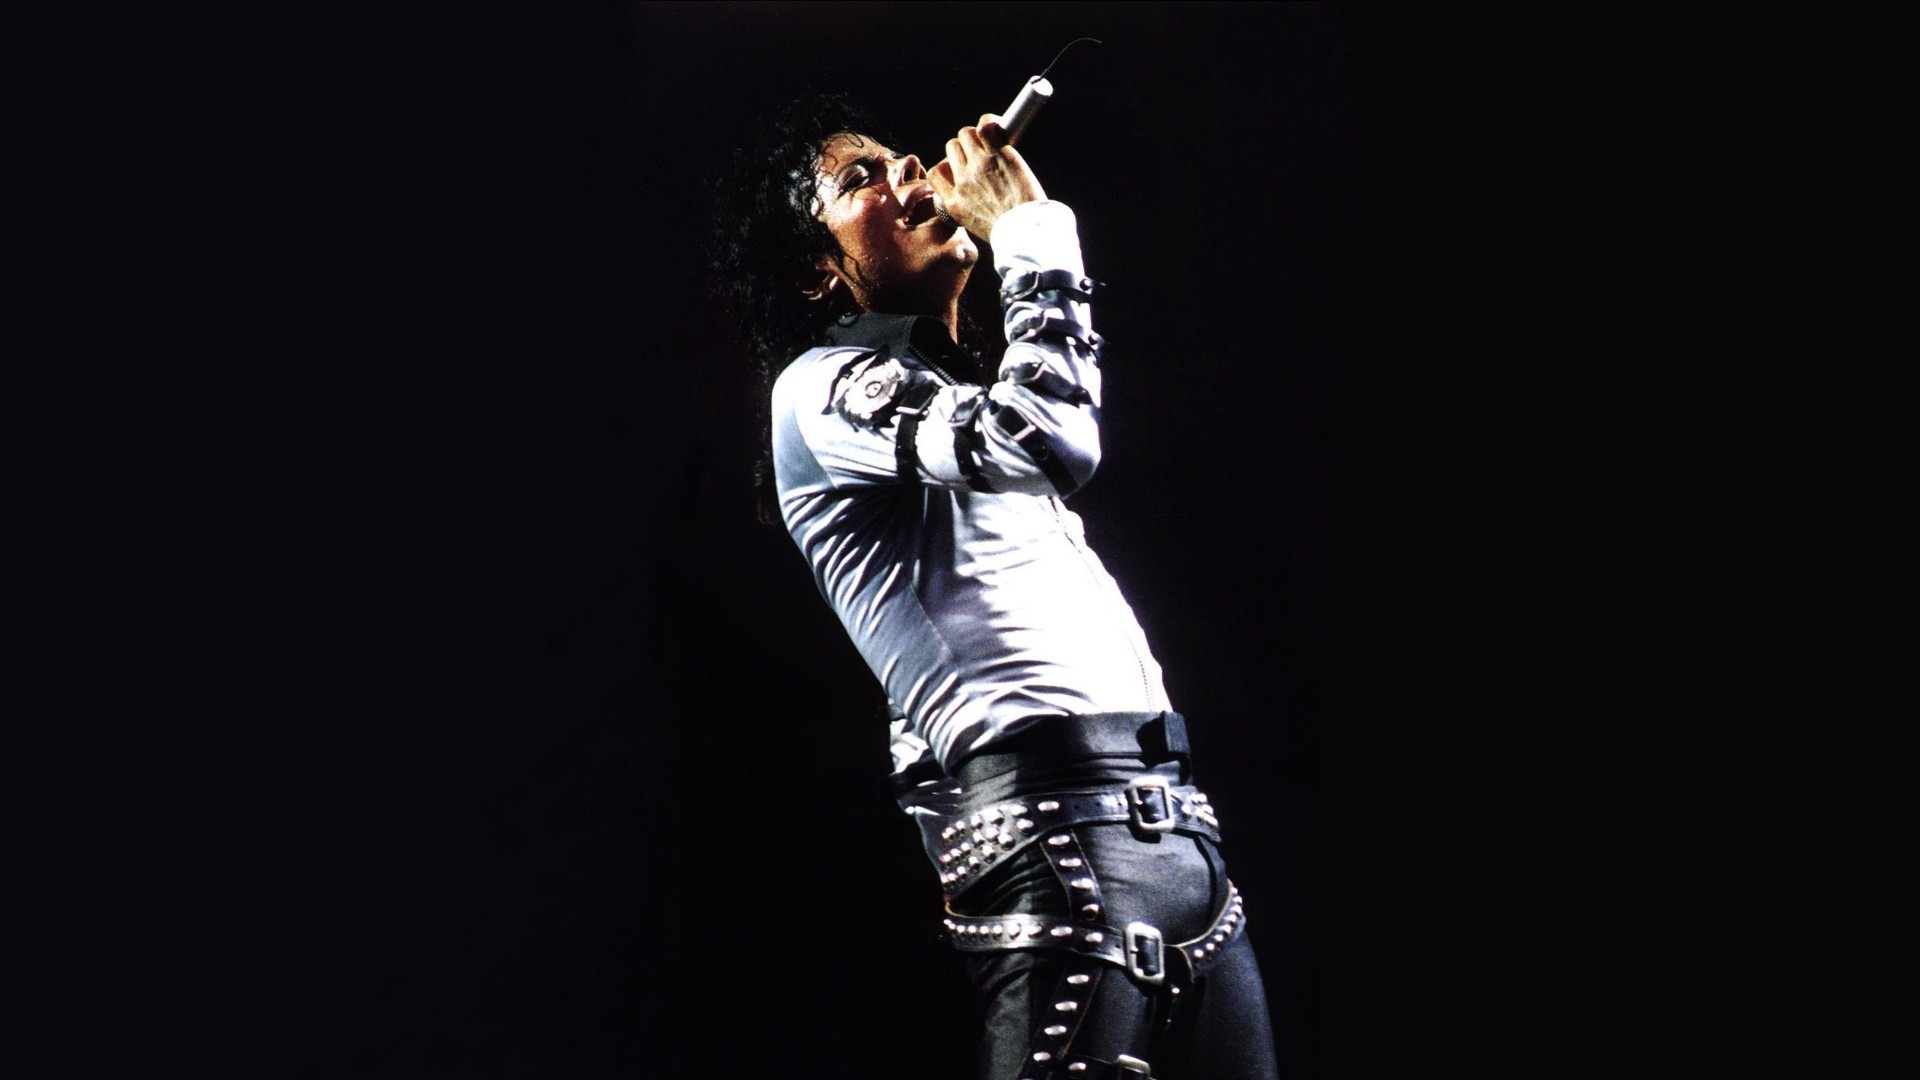 Michael Jackson Full Hd Wallpaper 1920x1080 1920x1080